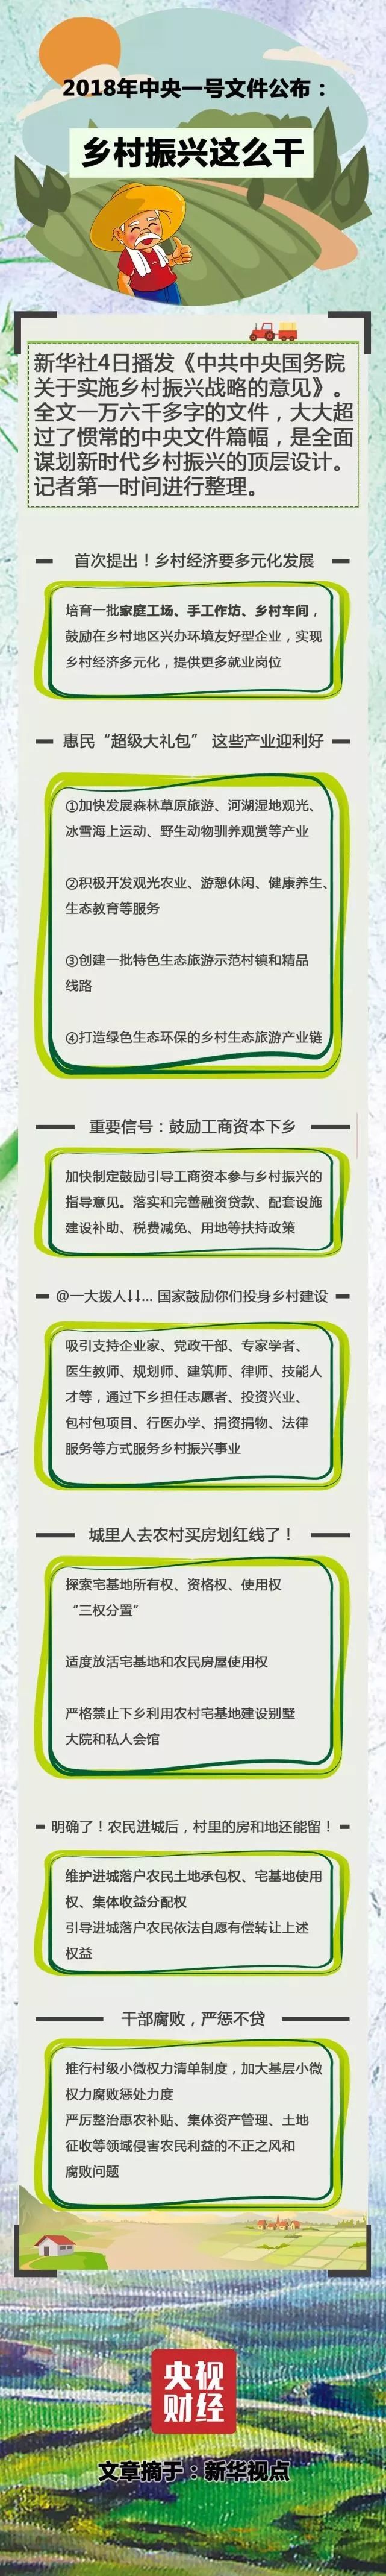 芭乐app下载地址18禁國際